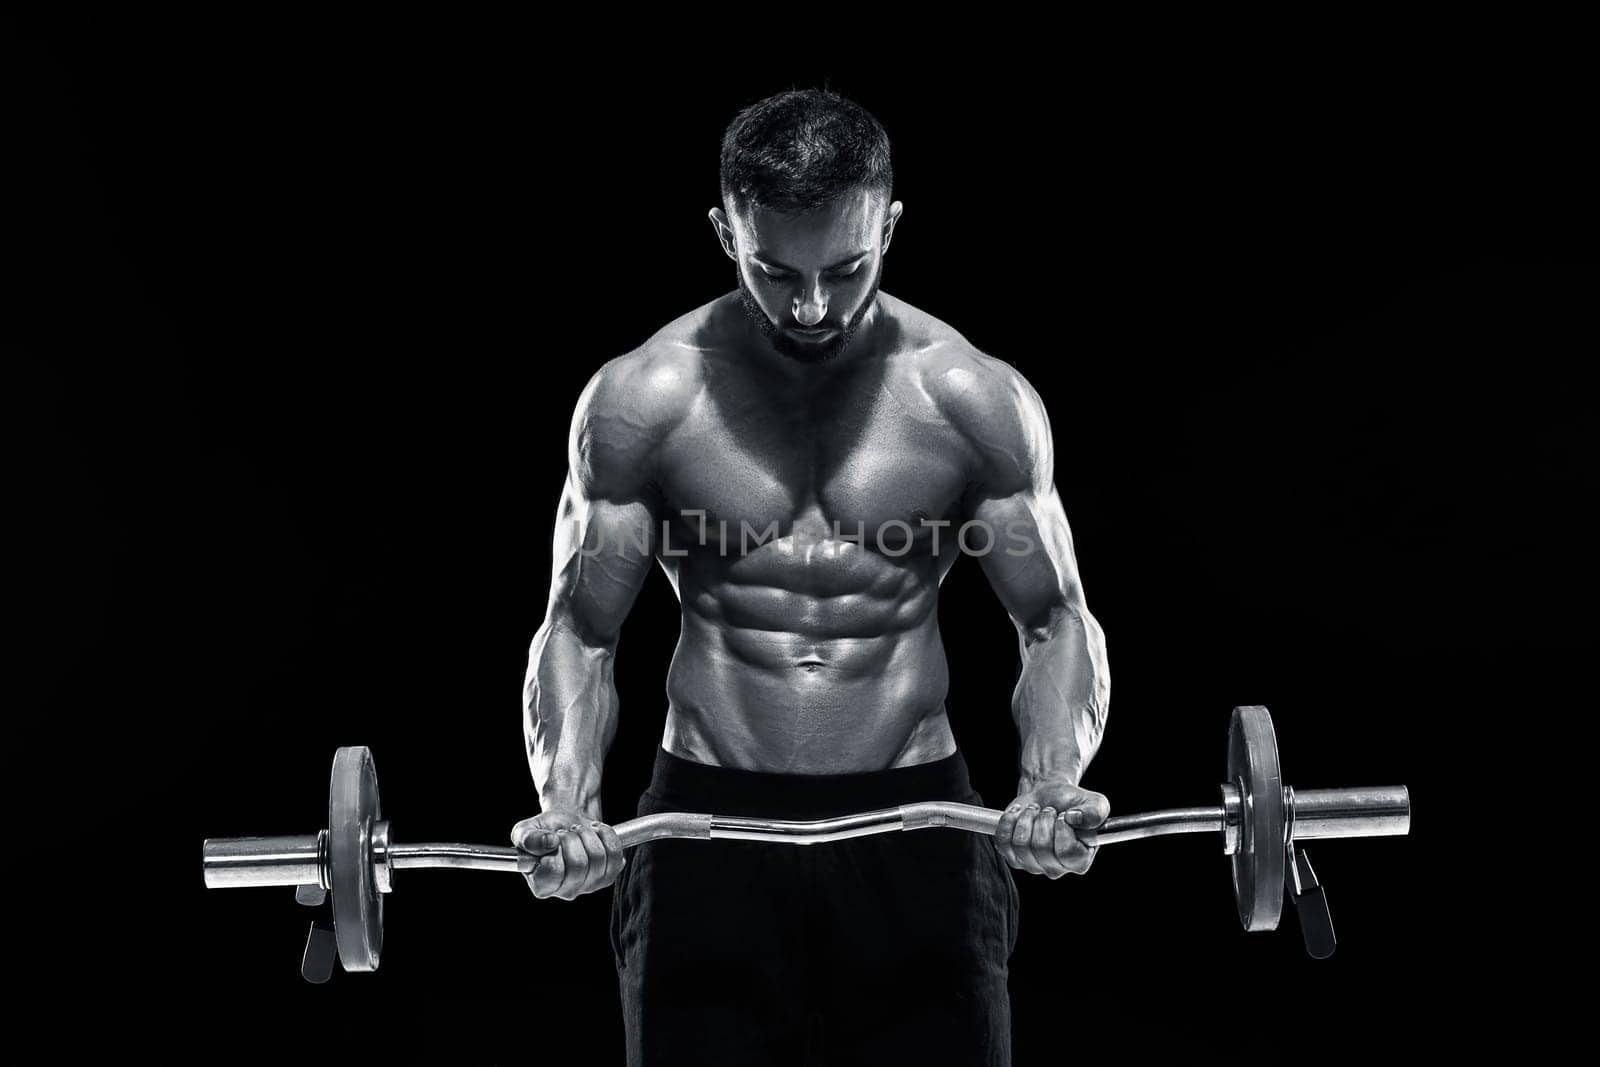 muscular man lifting weights over dark background by nazarovsergey